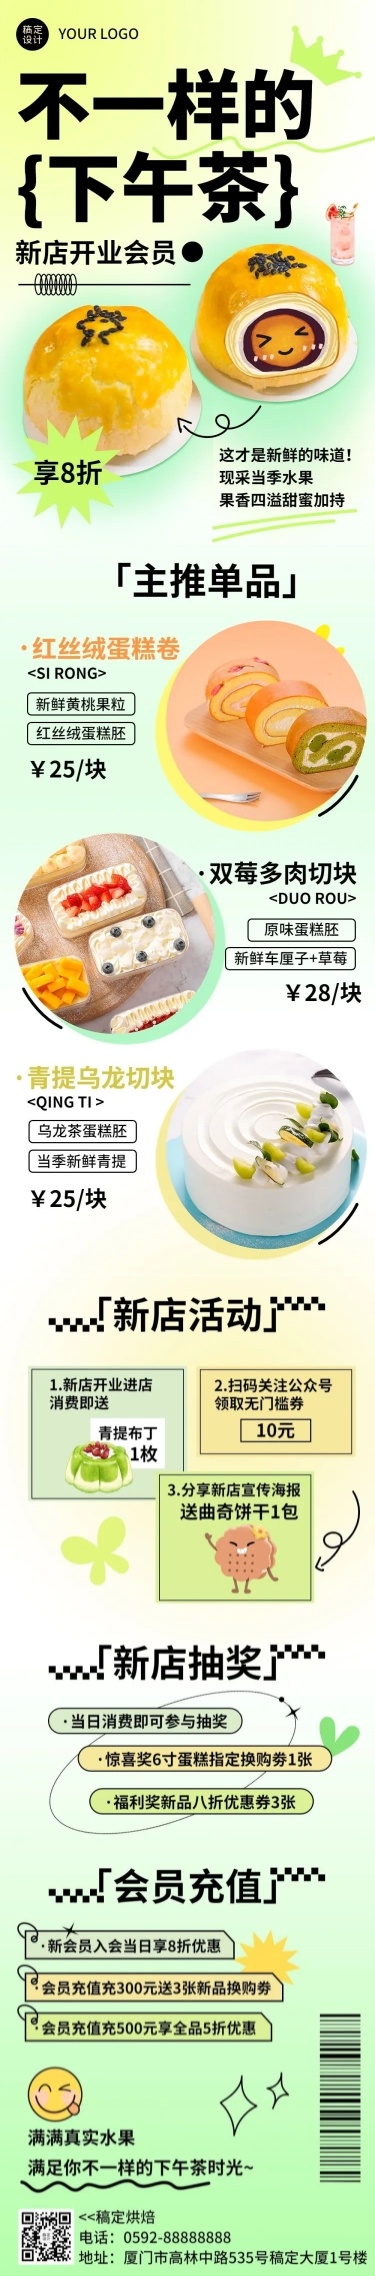 餐饮美食烘焙甜品新店开业文章长图